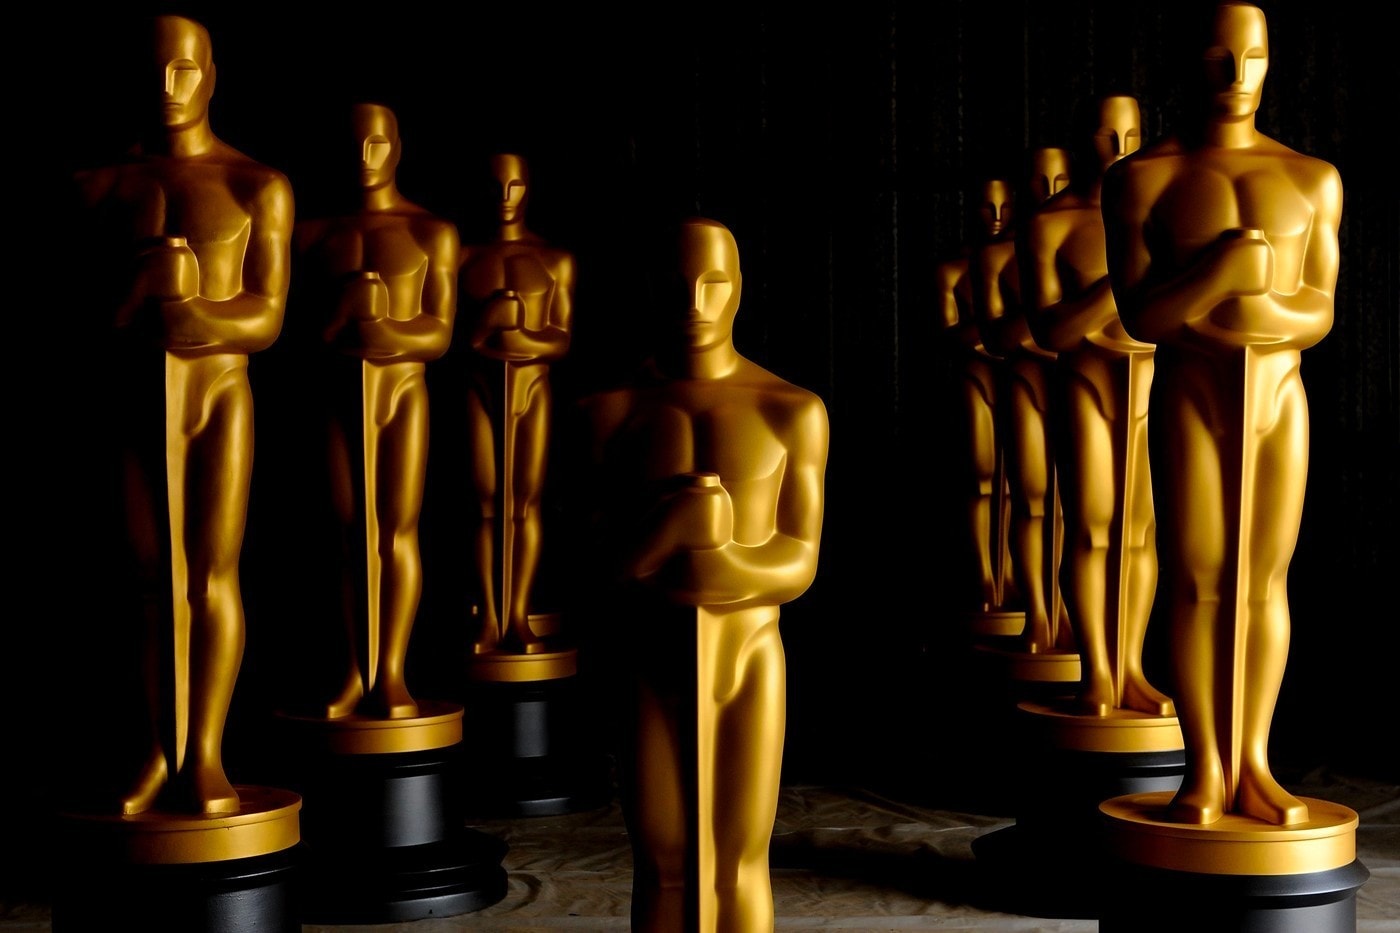 第 93 屆 Oscars 奧斯卡金像獎 2021 入圍名單正式公佈